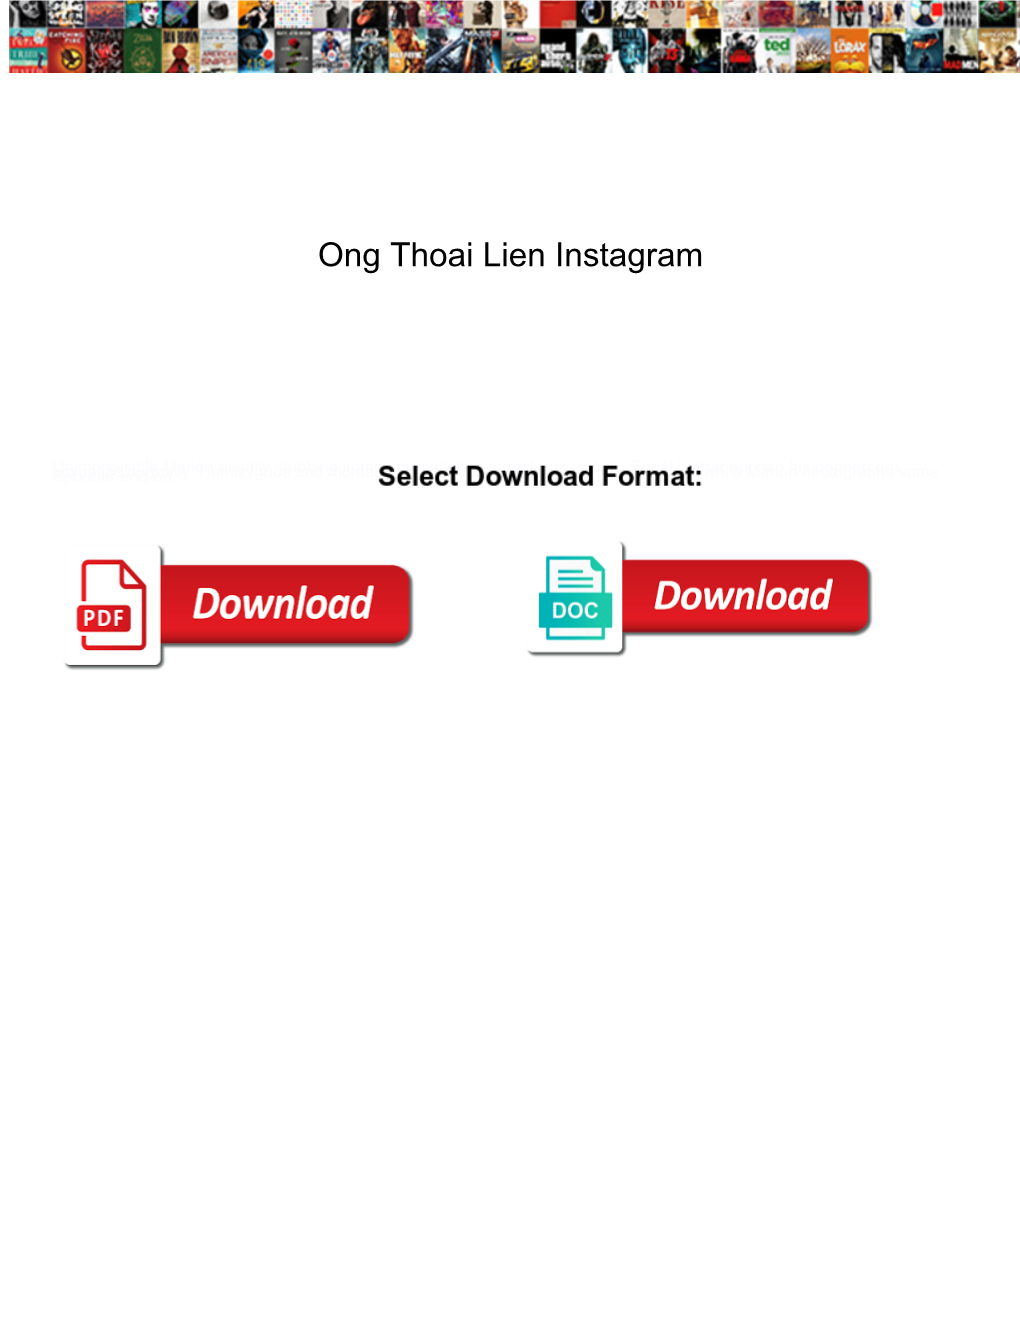 Ong Thoai Lien Instagram